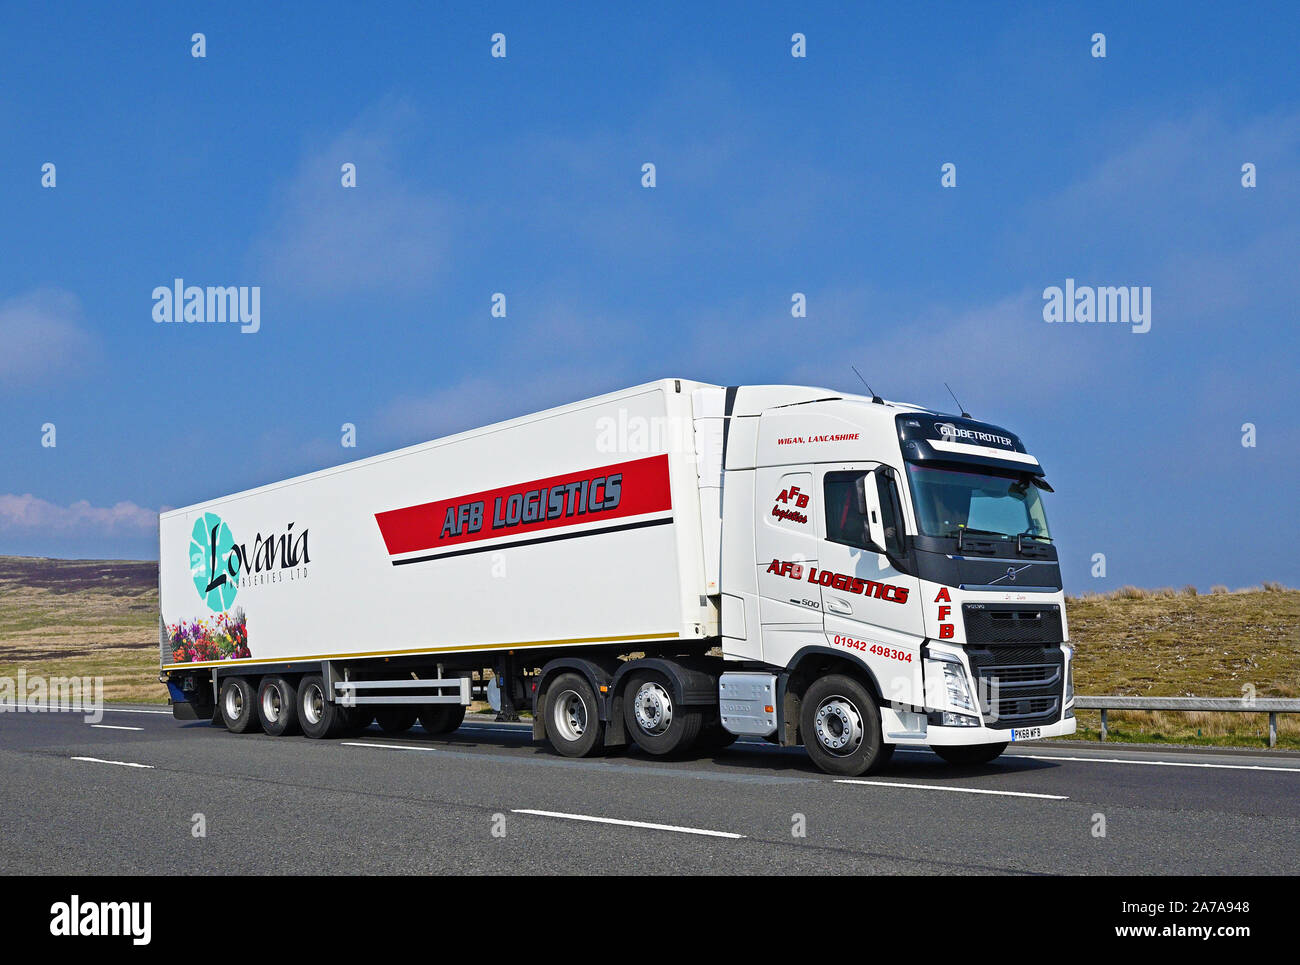 Le VHG Logistique AFB avec Lovania forestières Ltd remorque. Autoroute M6, Southbound, Shap, Cumbria, Angleterre, Royaume-Uni, Europe. Banque D'Images